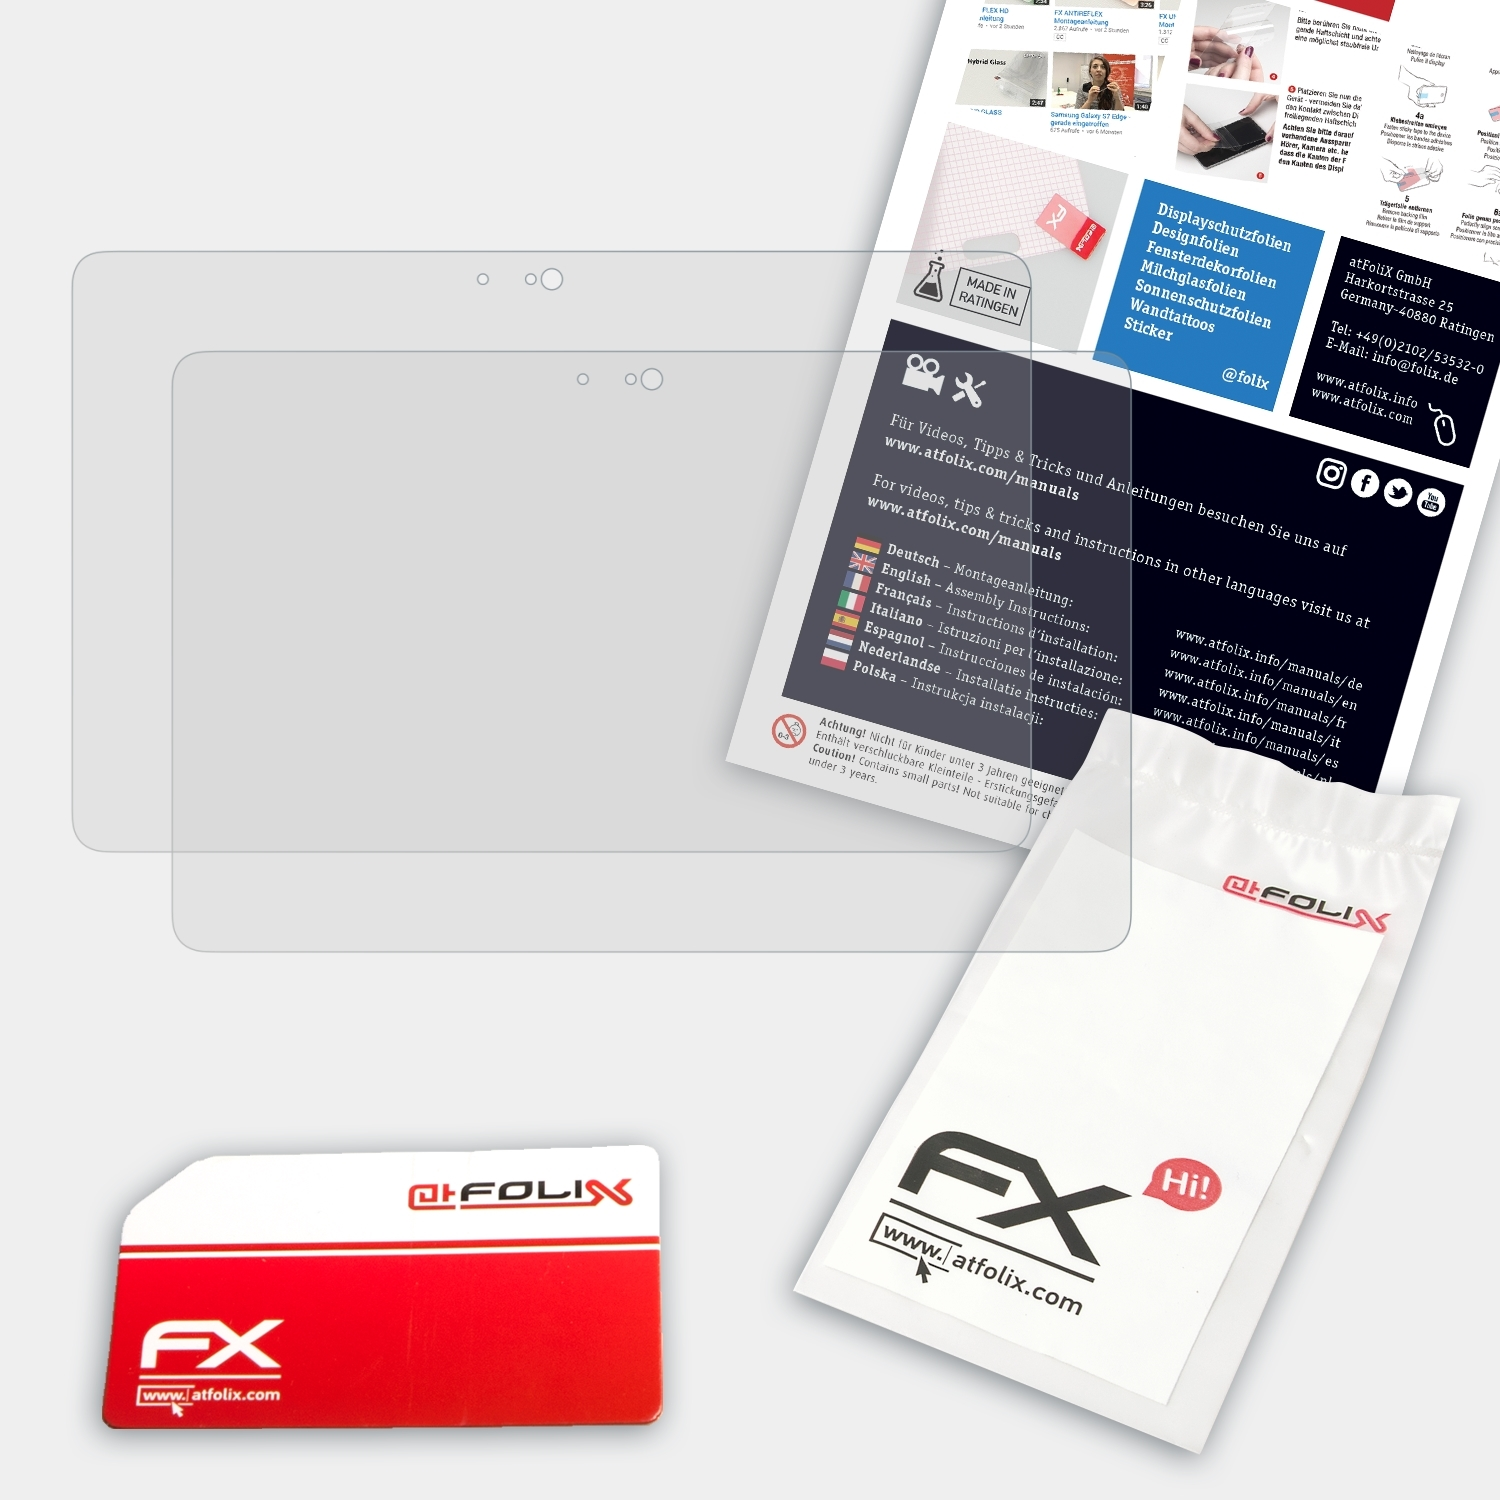 ATFOLIX 2x Venue 7000) 5000 11 Displayschutz(für FX-Antireflex / Dell Pro